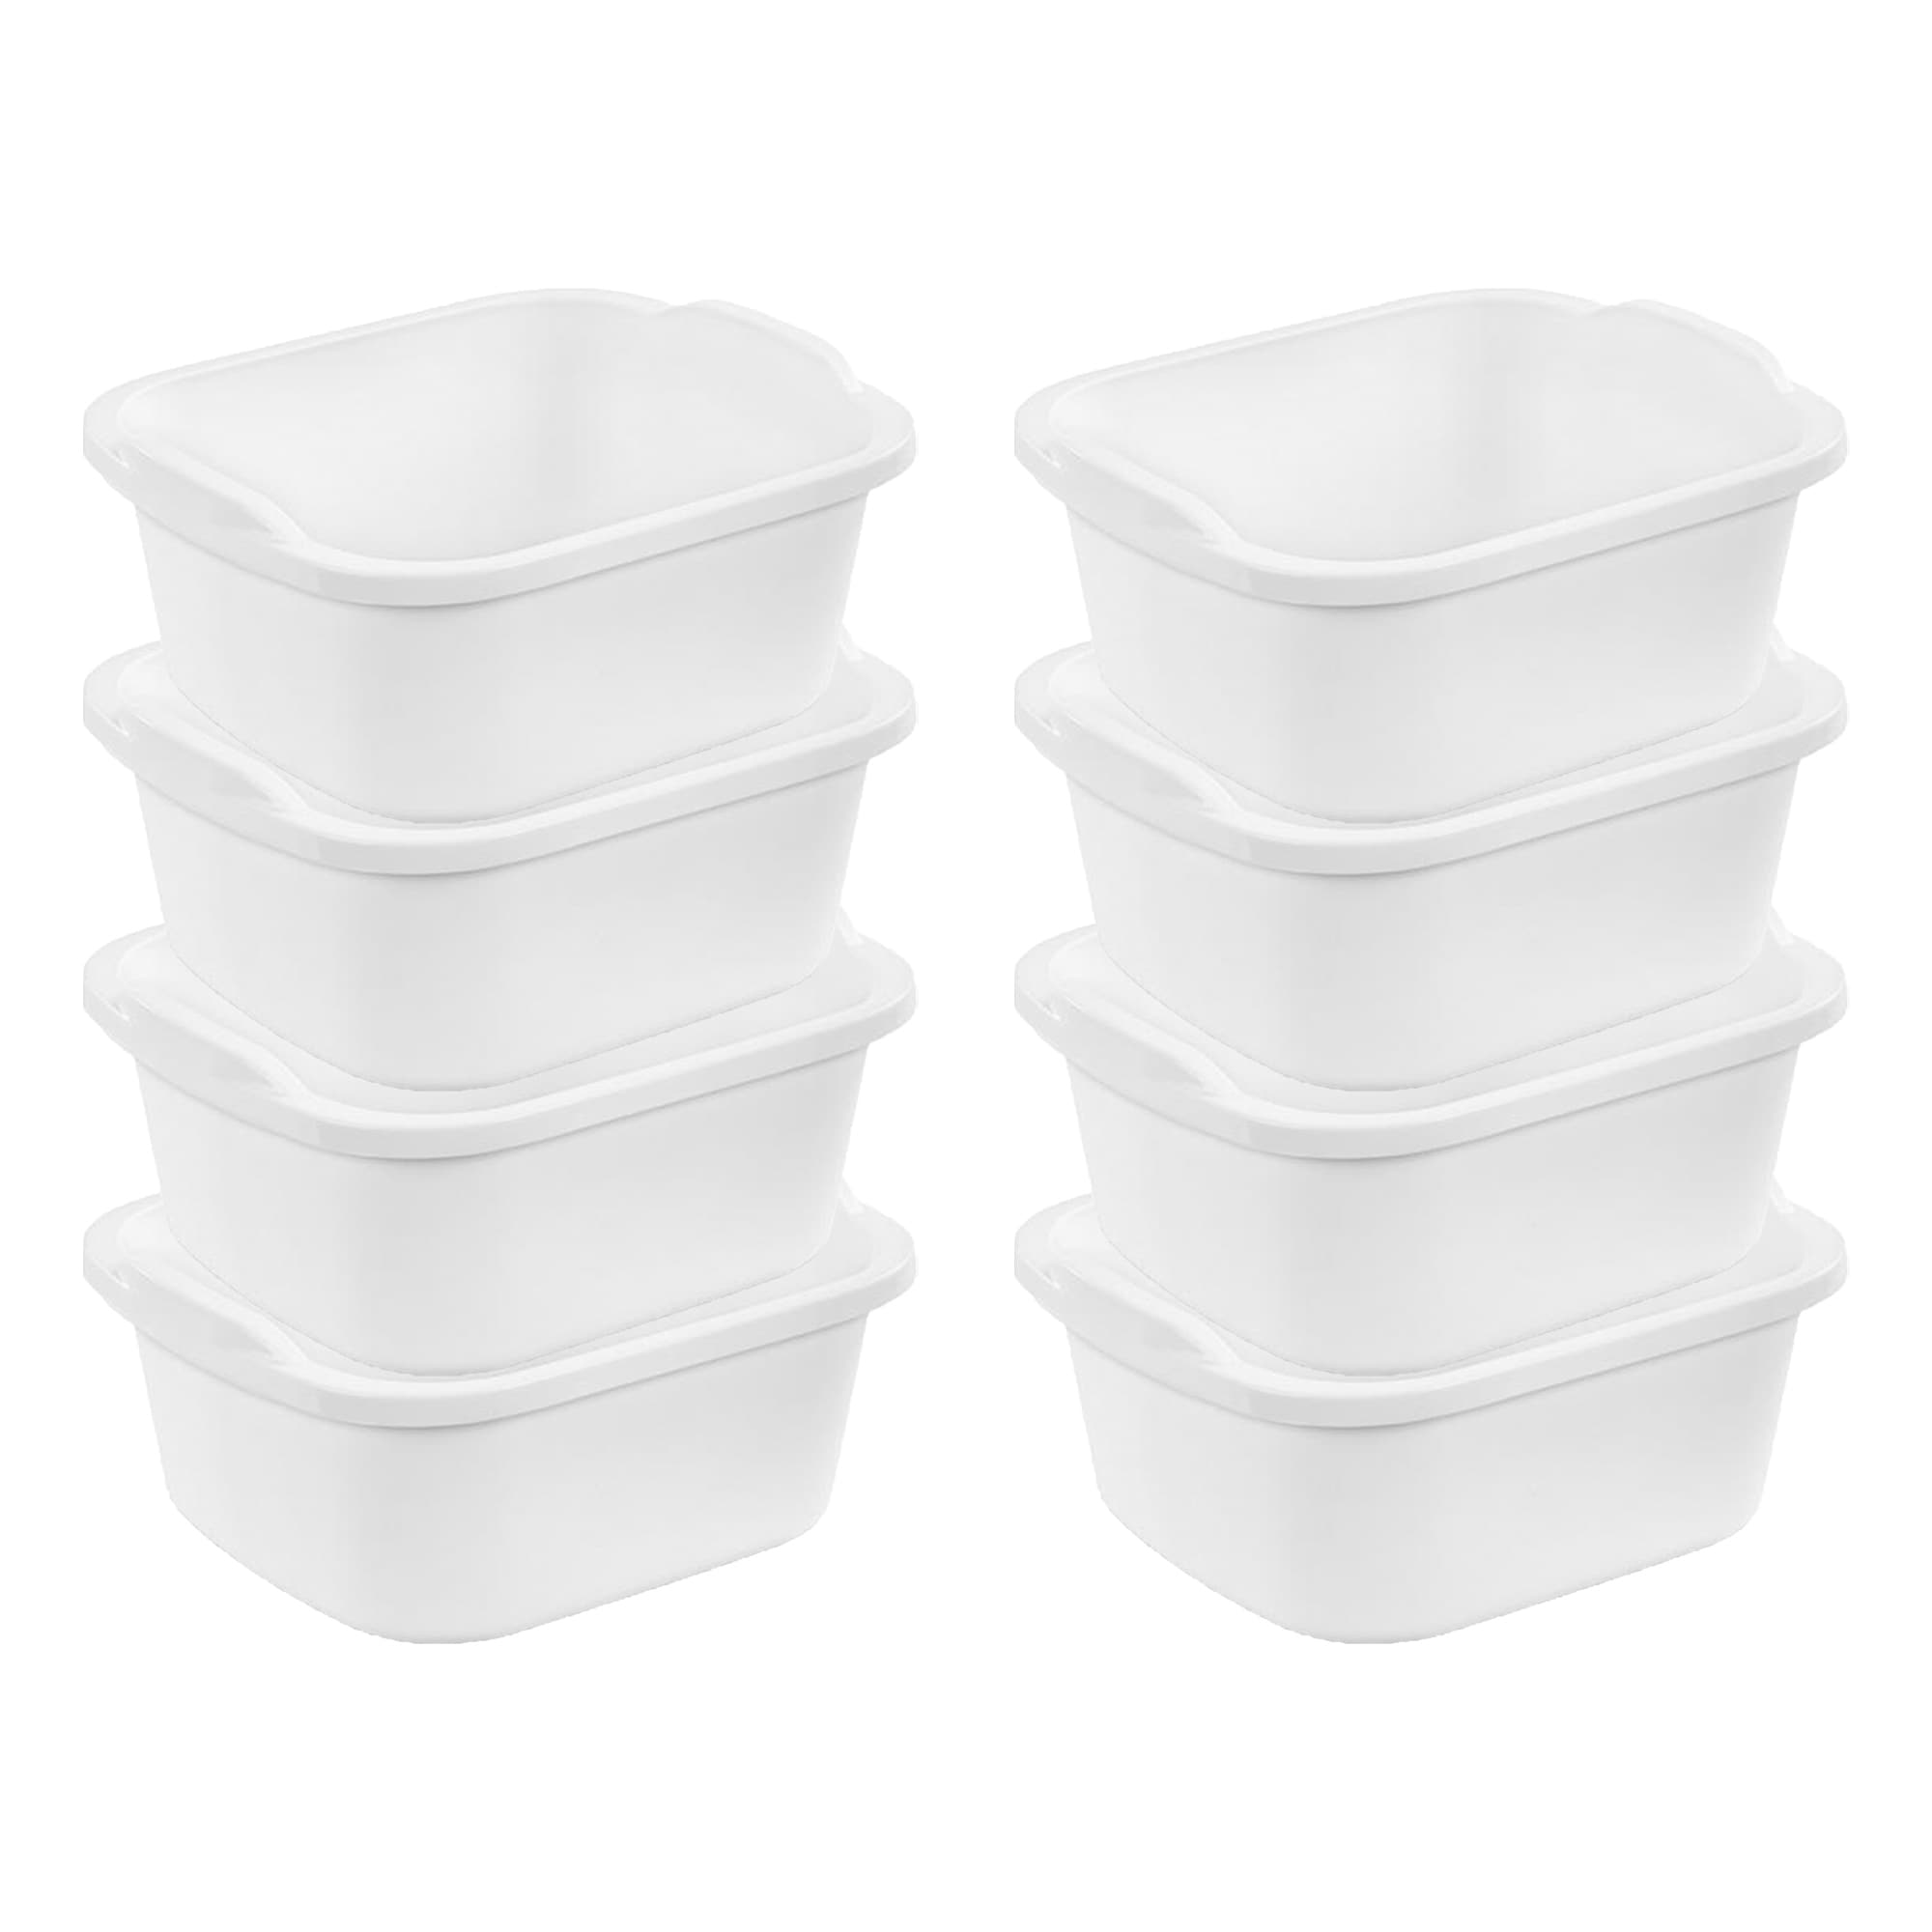 Sterilite Small Portable Rectangle Plastic 8 Qt Dish Pan, White (12 Pack)